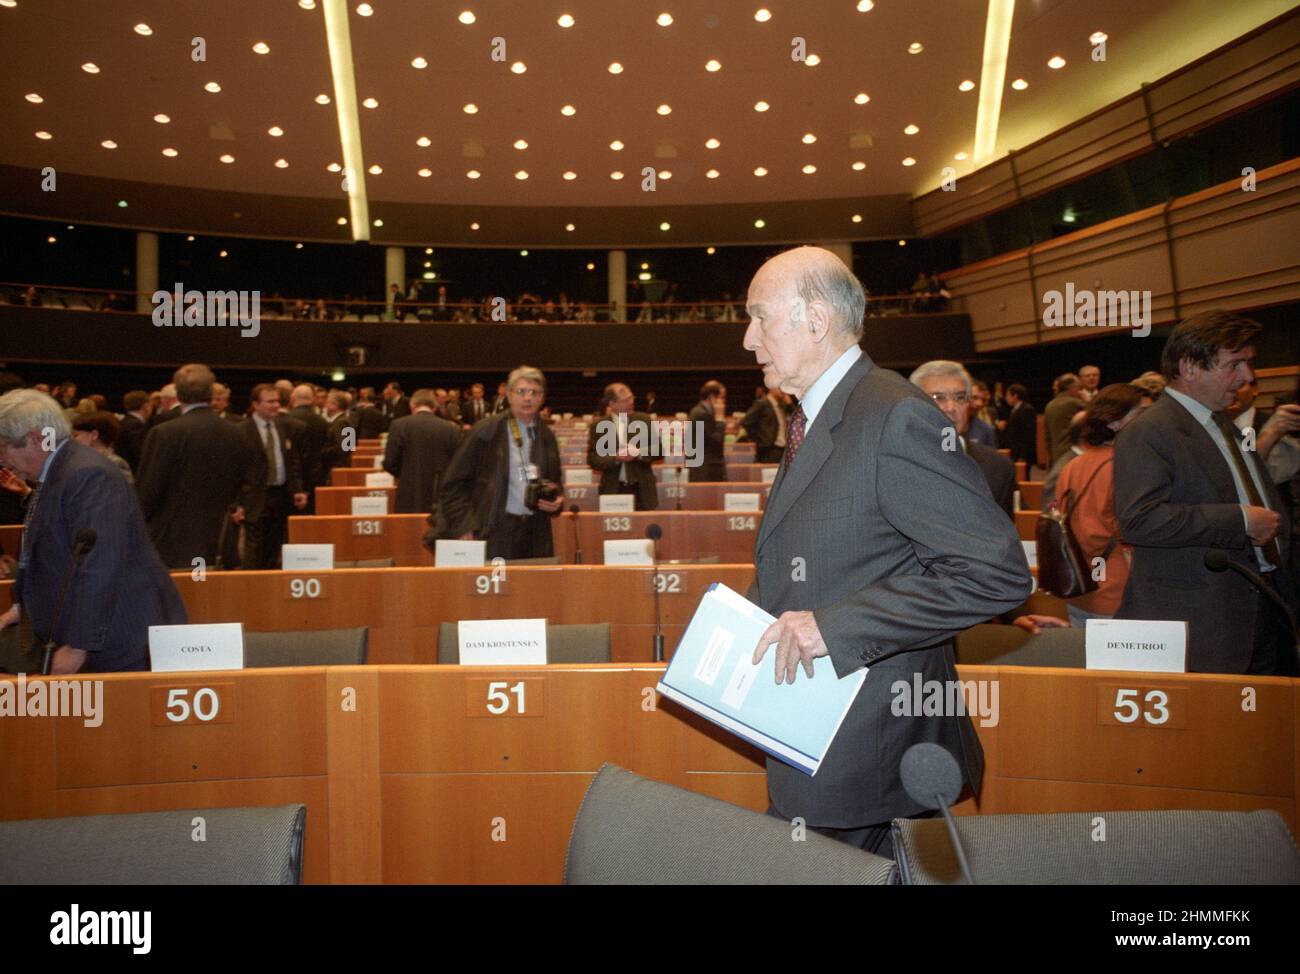 Belgique, Bruxelles, le 28 février 2002: Valry Giscard d'Estaing, Président de la Convention européenne, assiste à une conférence sur l'avenir de l'Europe où un traité établissant une Constitution pour l'Europe doit être adopté. Banque D'Images